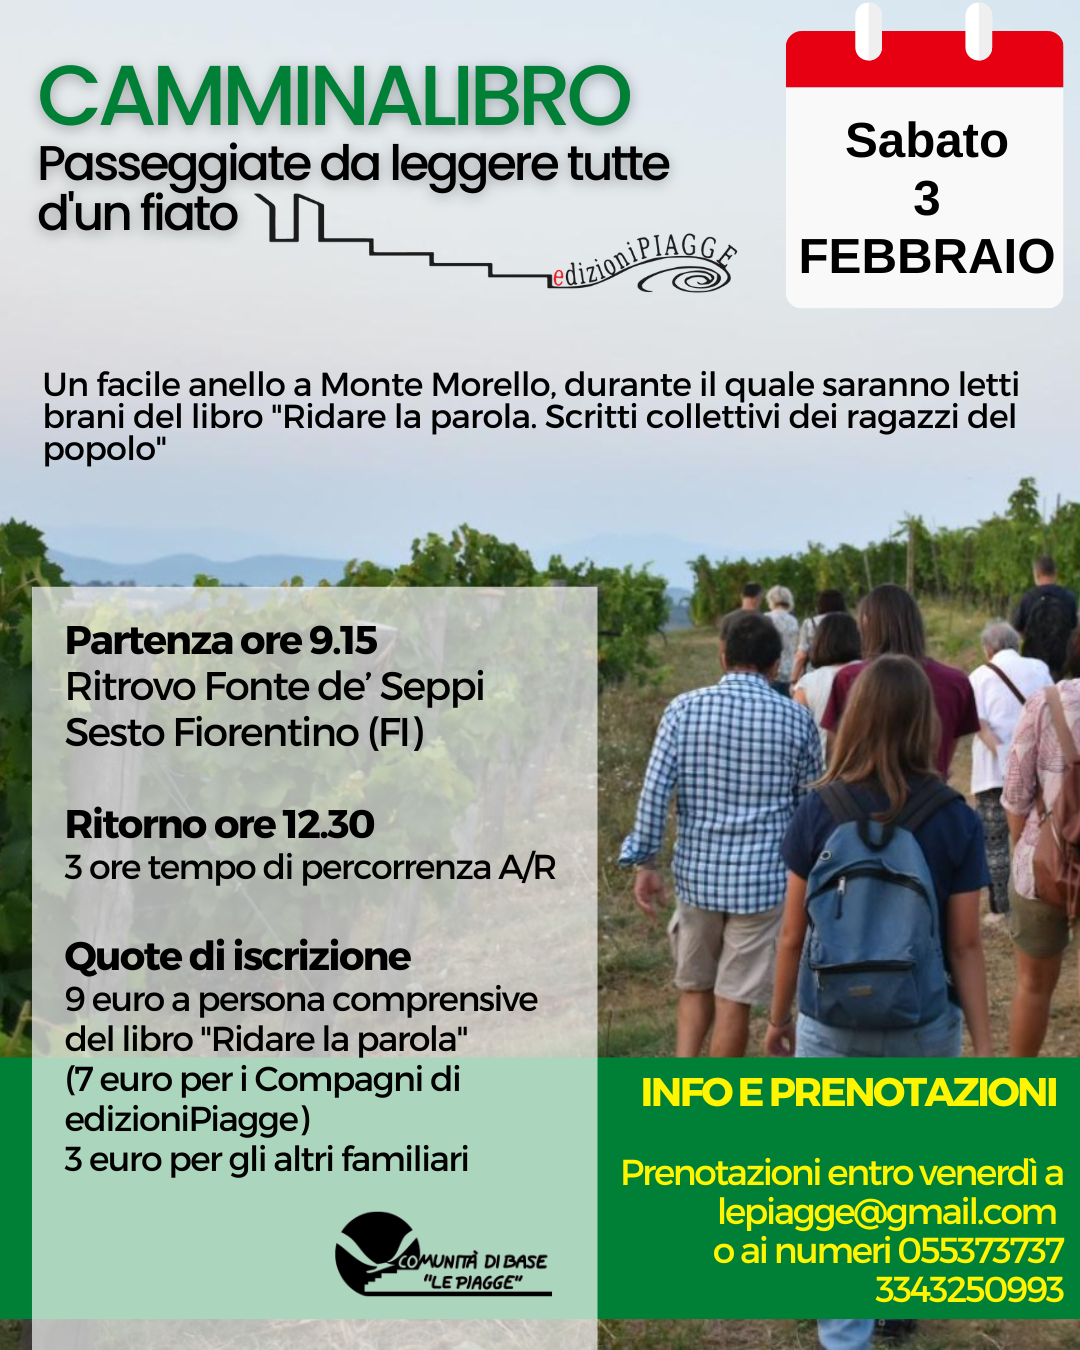 Torna il Camminalibro di edizioniPiagge, sabato 3 febbraio a Monte Morello. Come partecipare